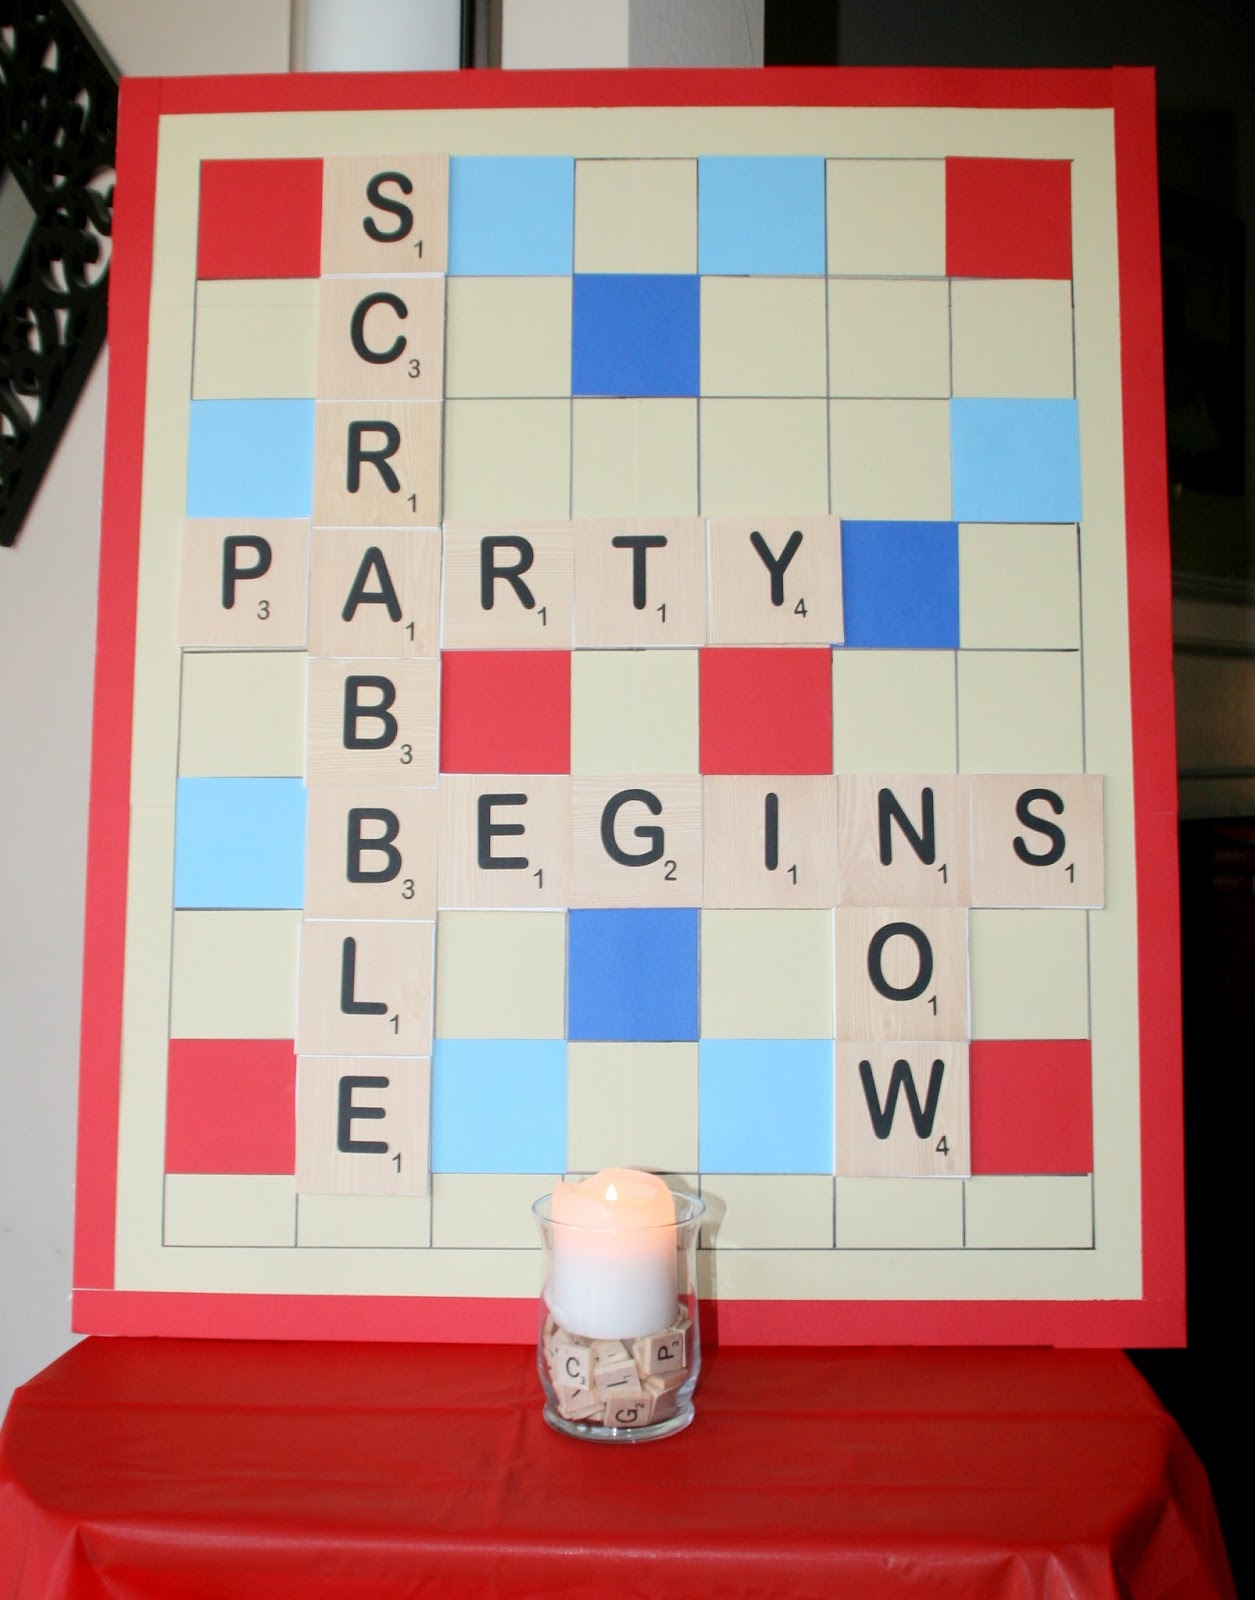 Party Scrabble